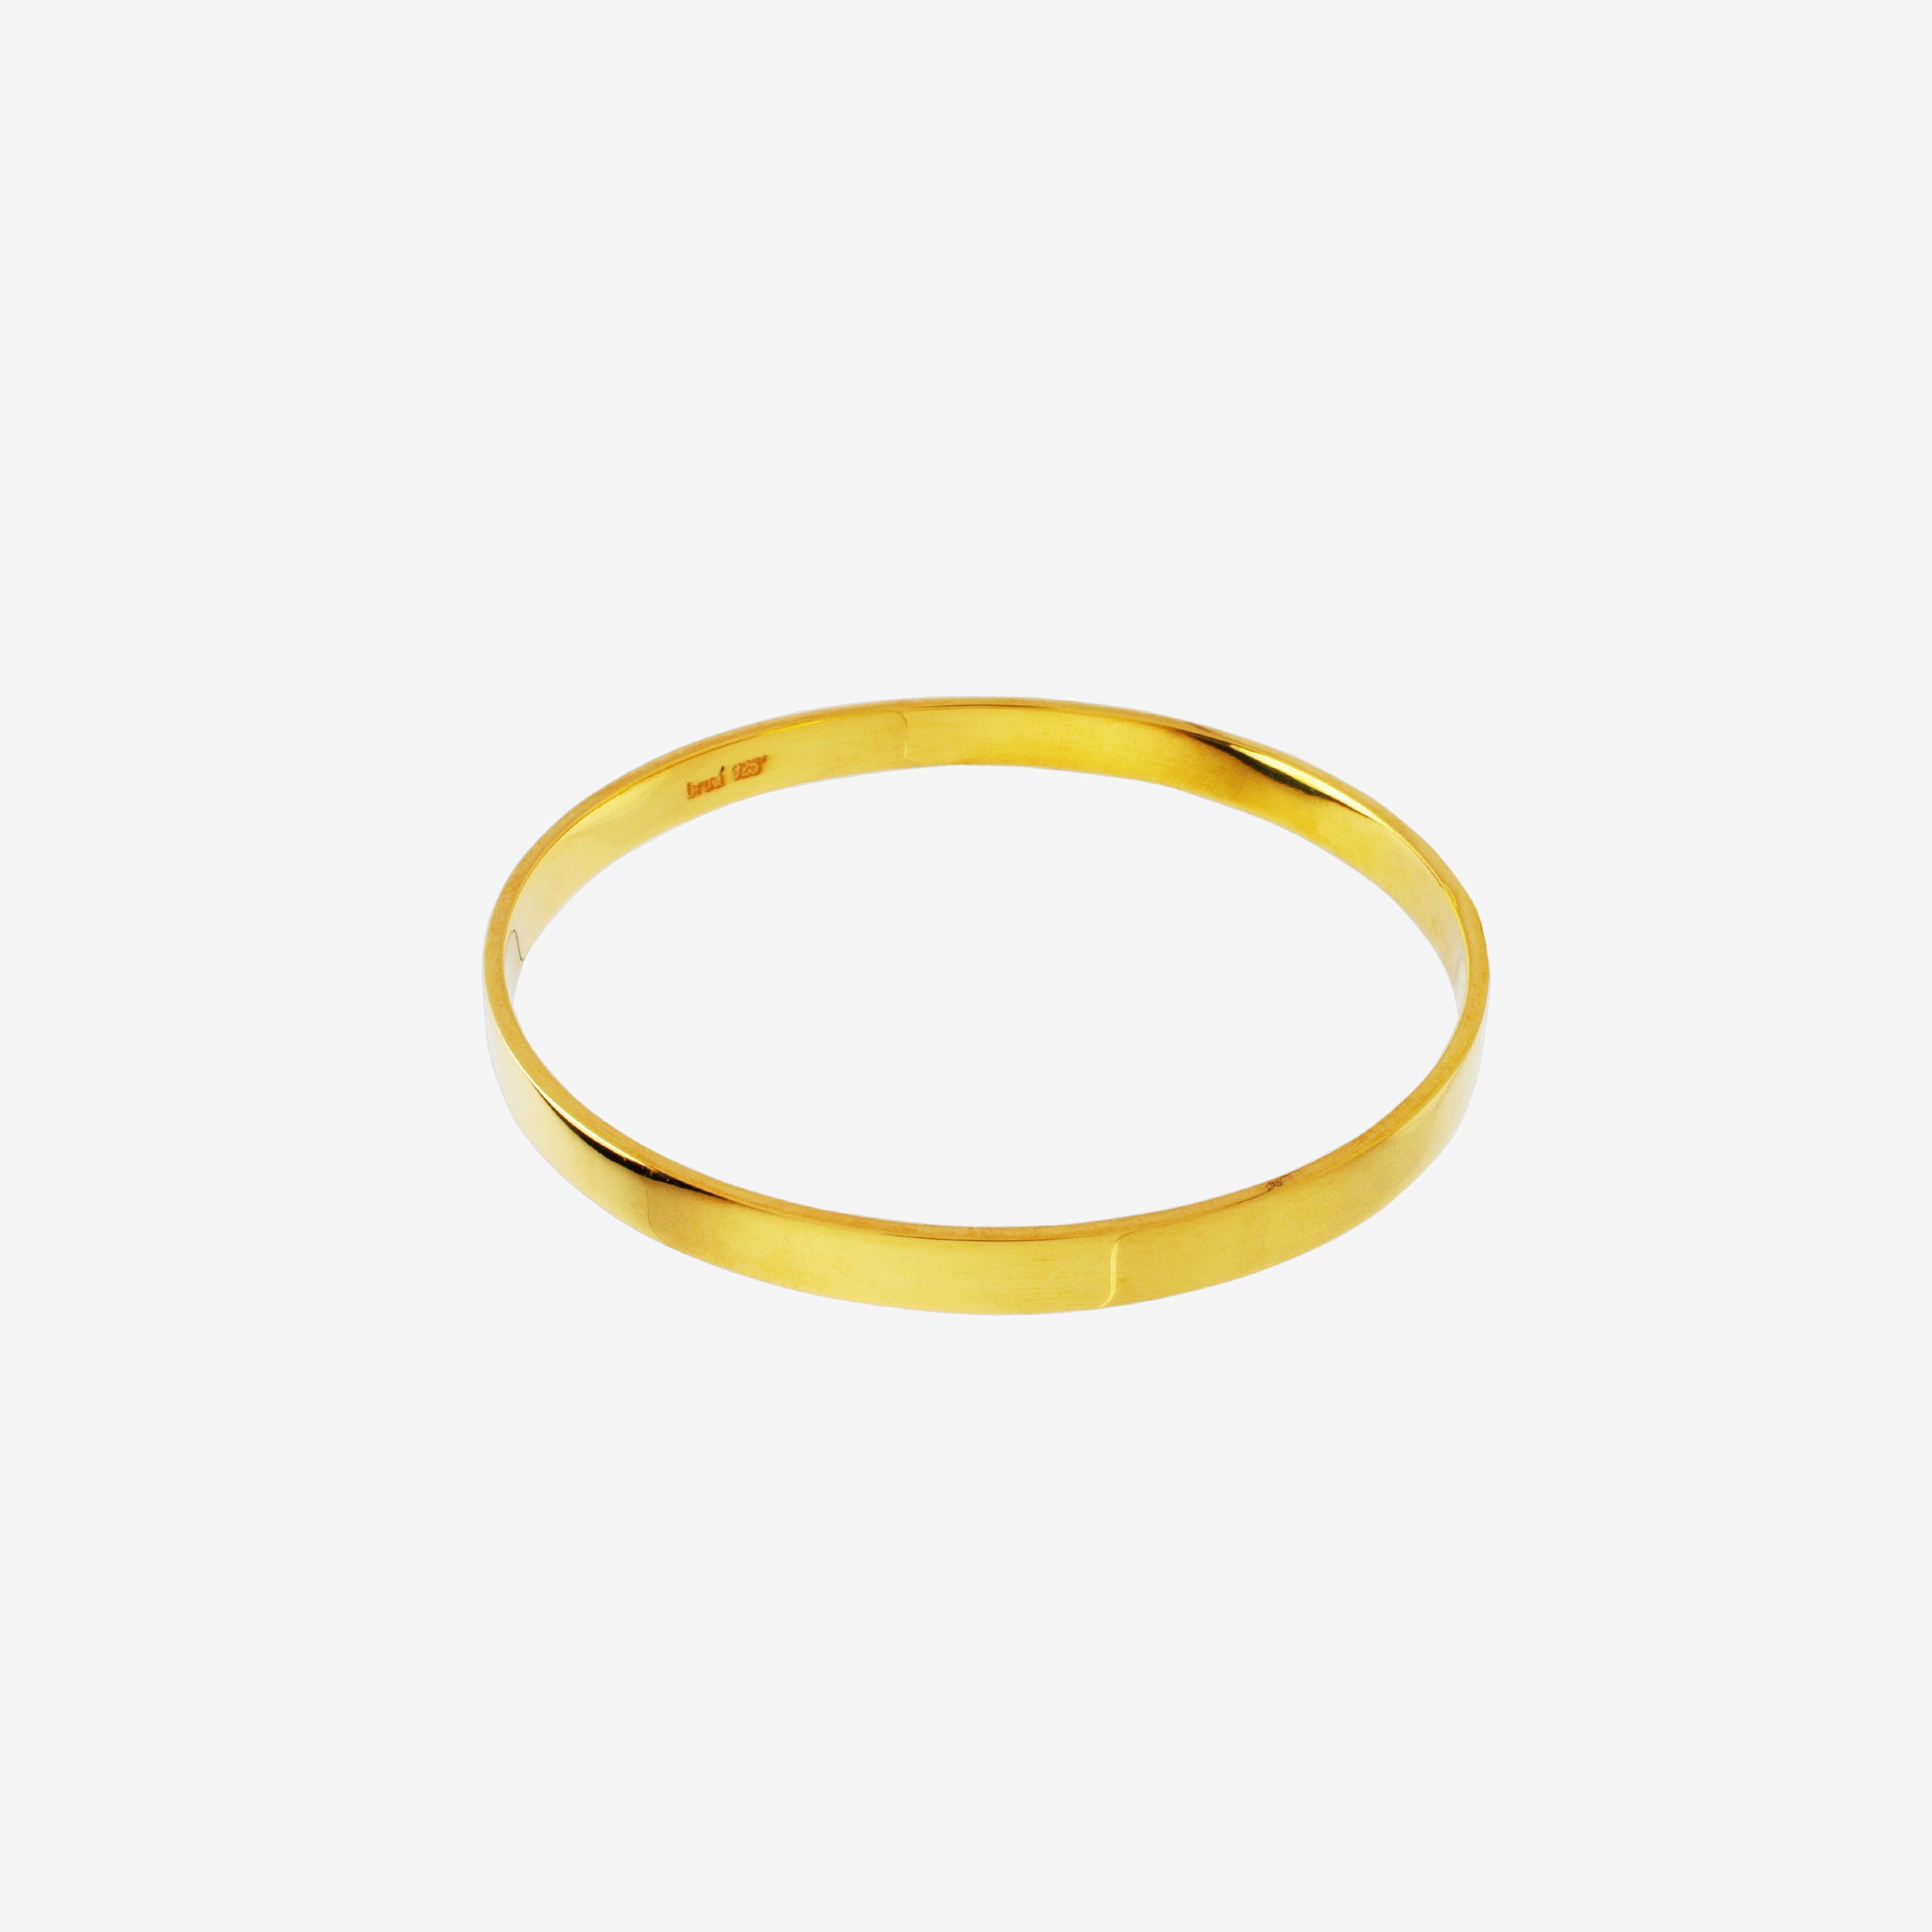 Brua Bracelet 1 - Gold